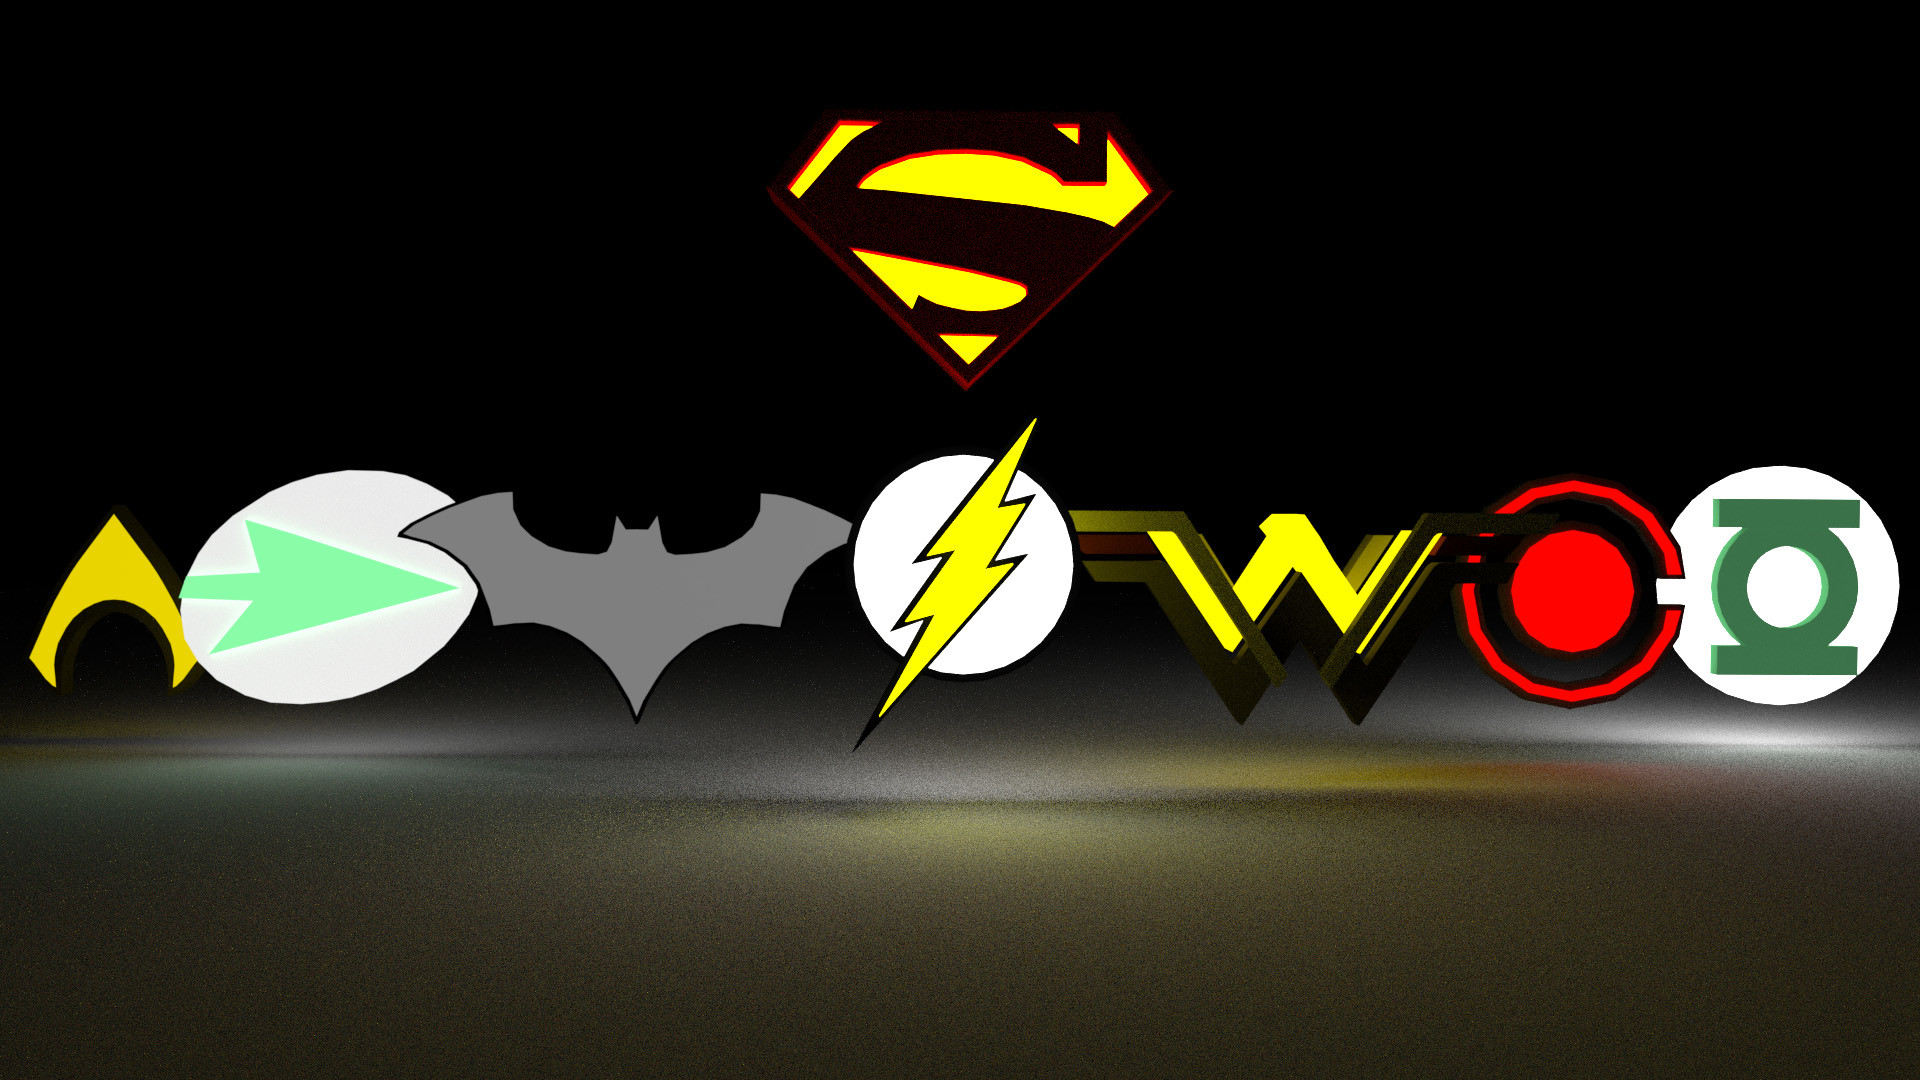 Justice League Hero Logos